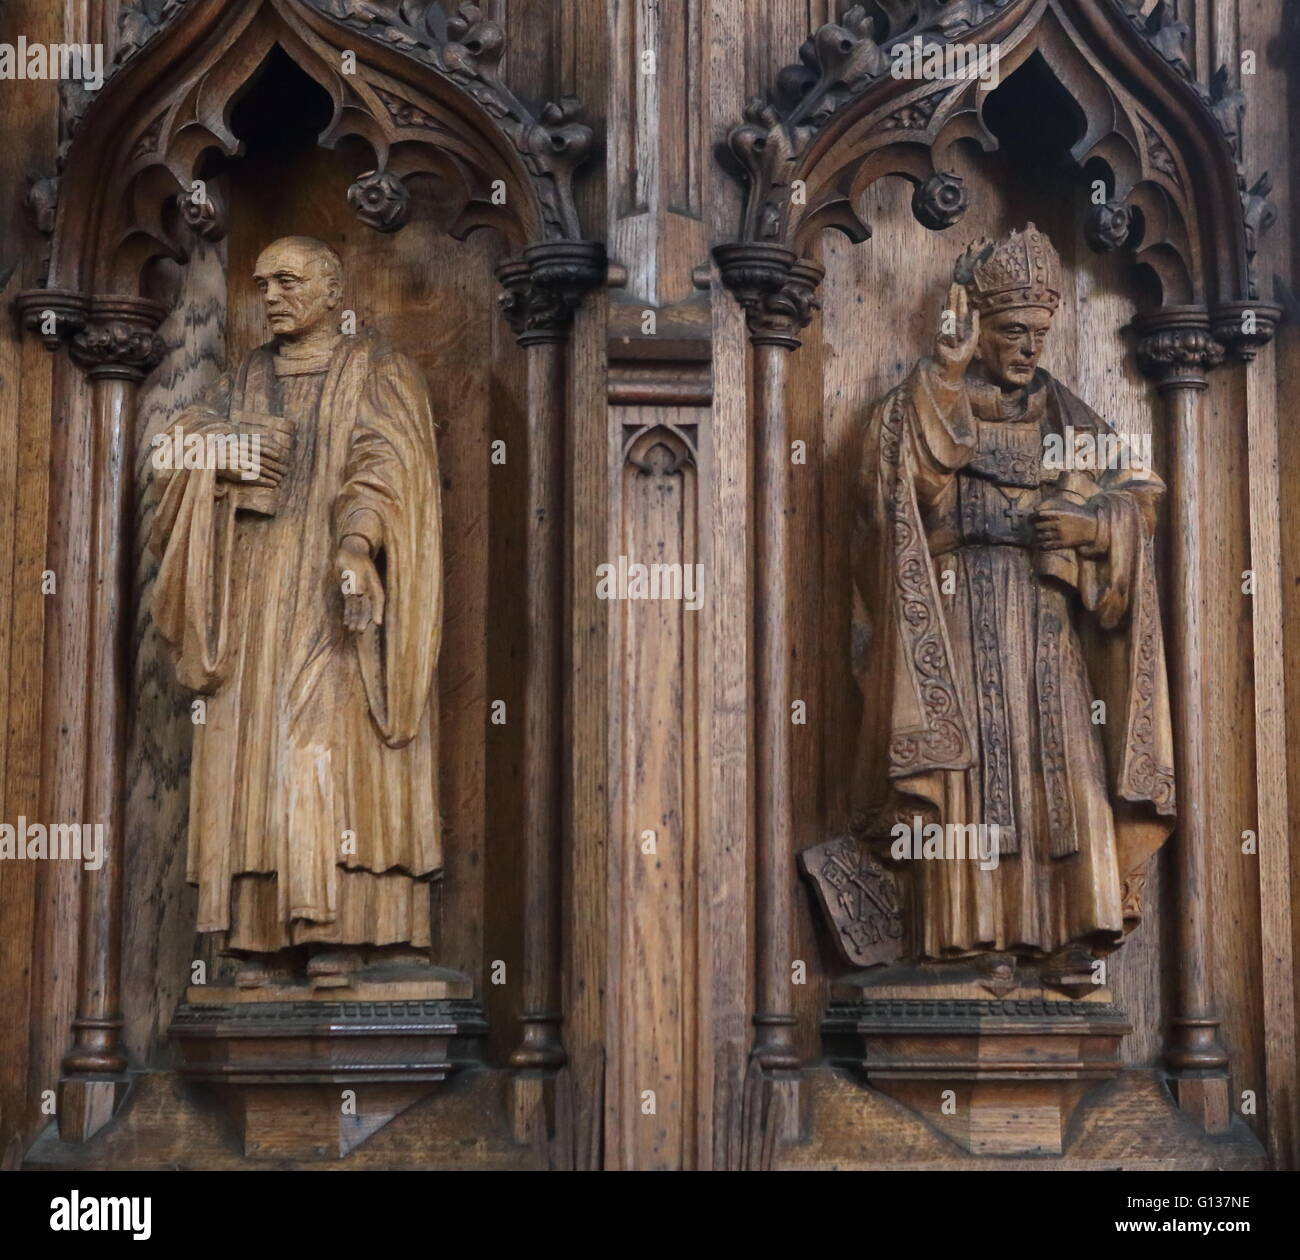 Figuras de madera tallada en la Iglesia - Stamford Lincolnshire, Reino Unido Foto de stock